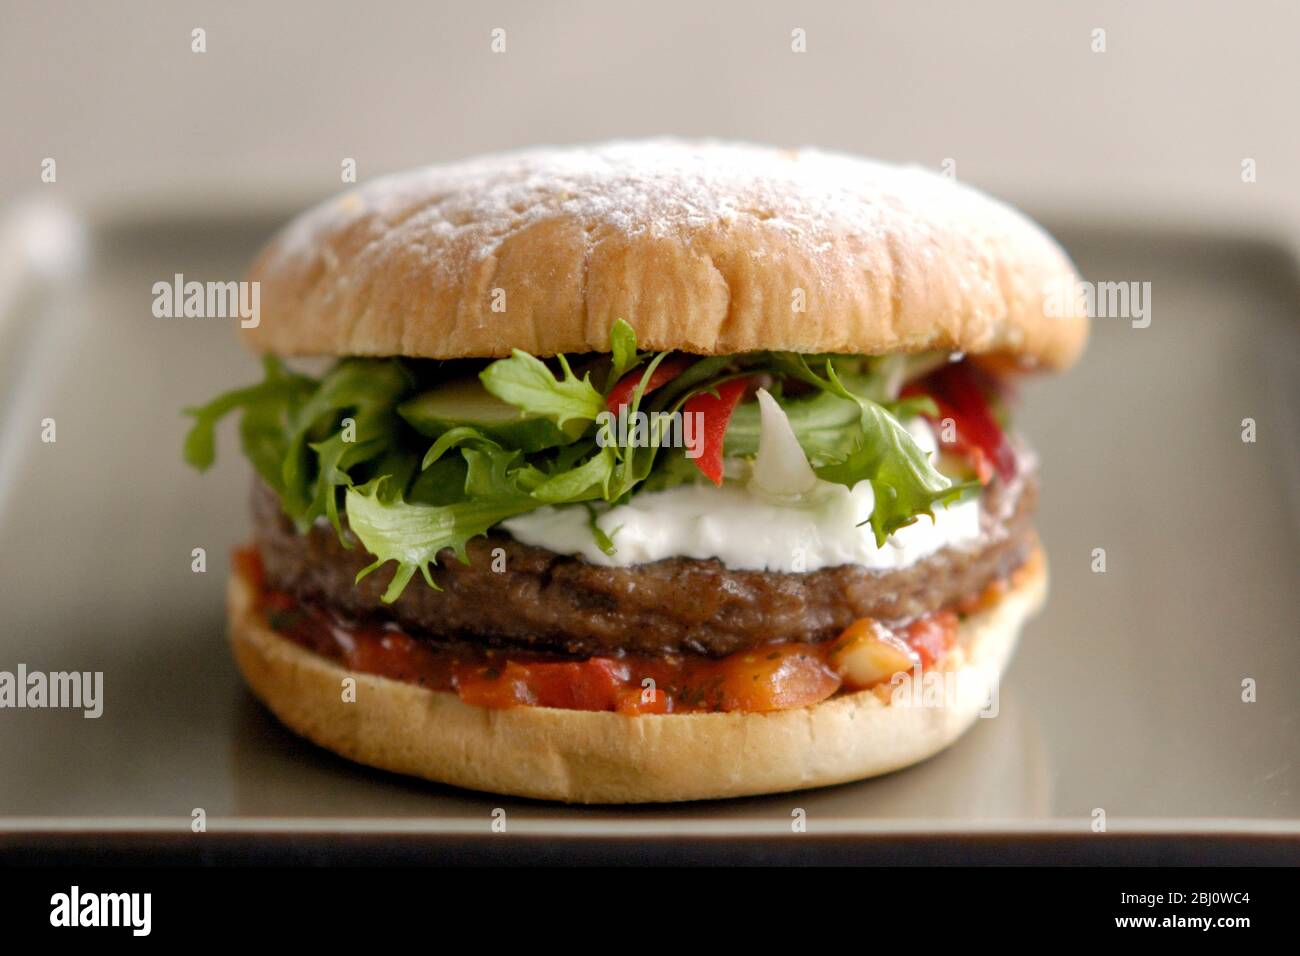 Hamburger vom Grill im Brötchen mit Friseuesalat, Gurke, Pfefferstreifen, Sauerrahm und Tomatensalsa - Stockfoto